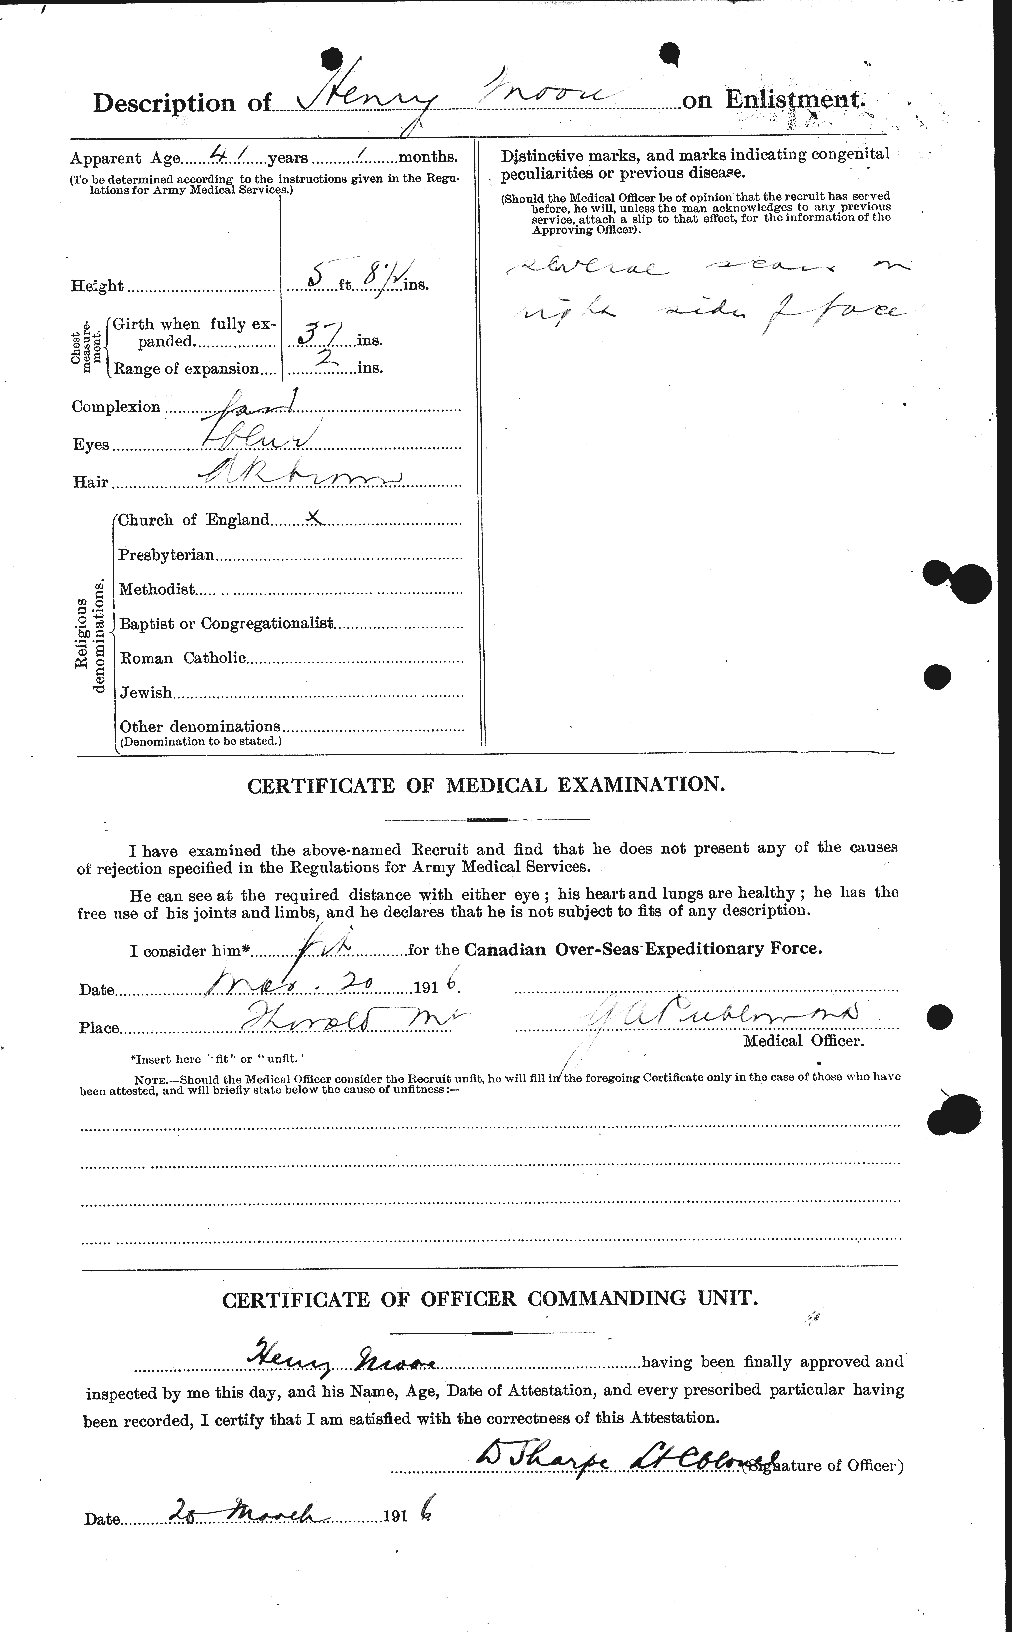 Dossiers du Personnel de la Première Guerre mondiale - CEC 502094b